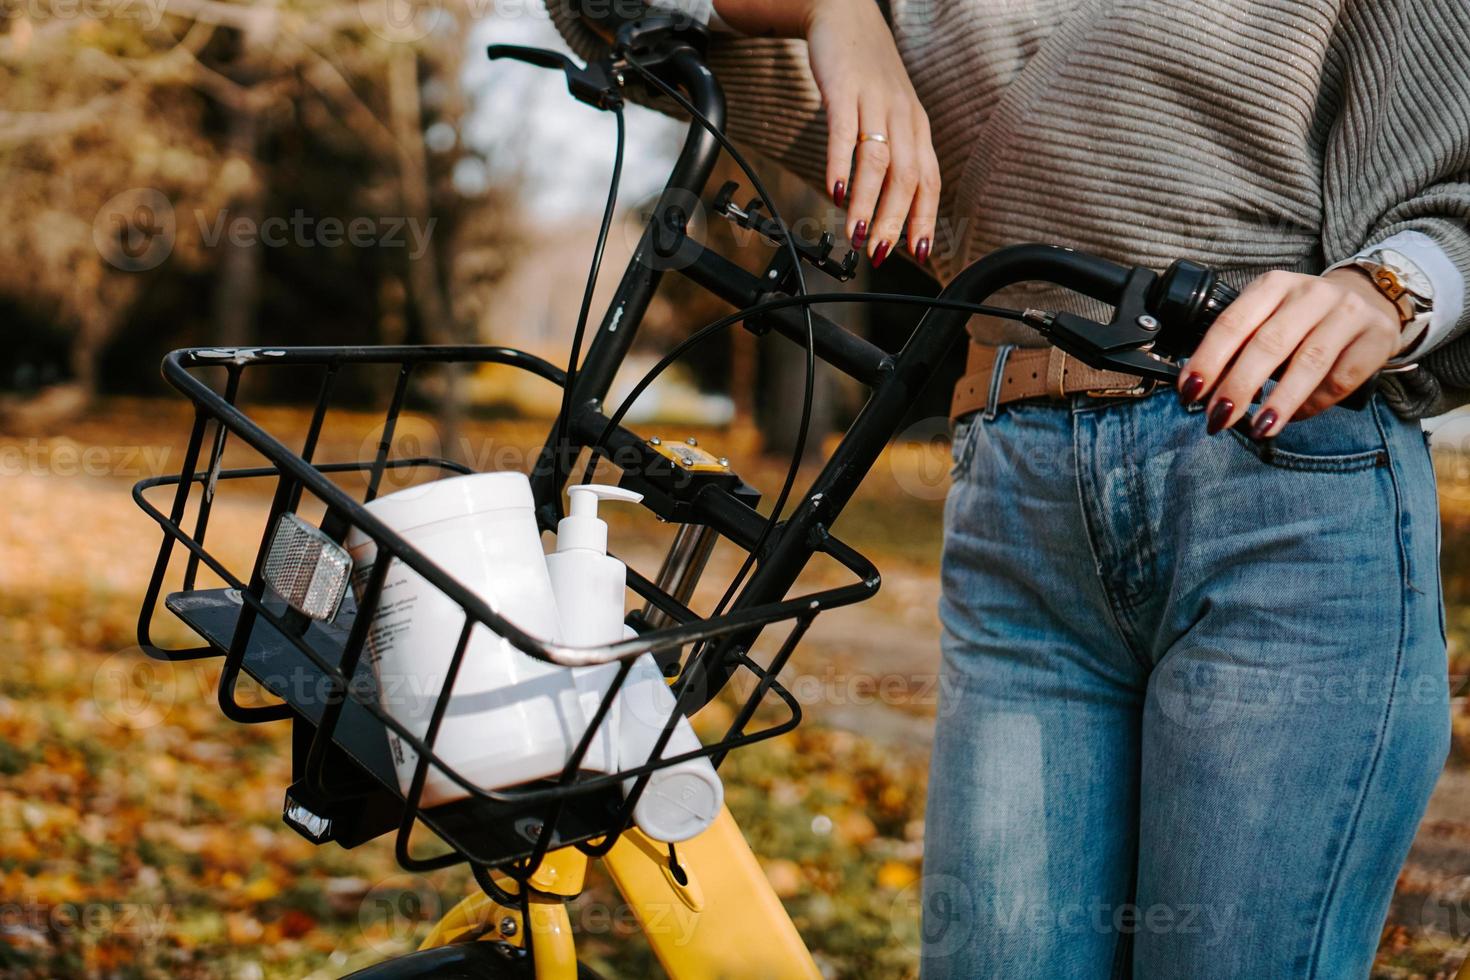 Fahrradkorb mit Kosmetikdosen. Selbstversorgung im Herbst foto